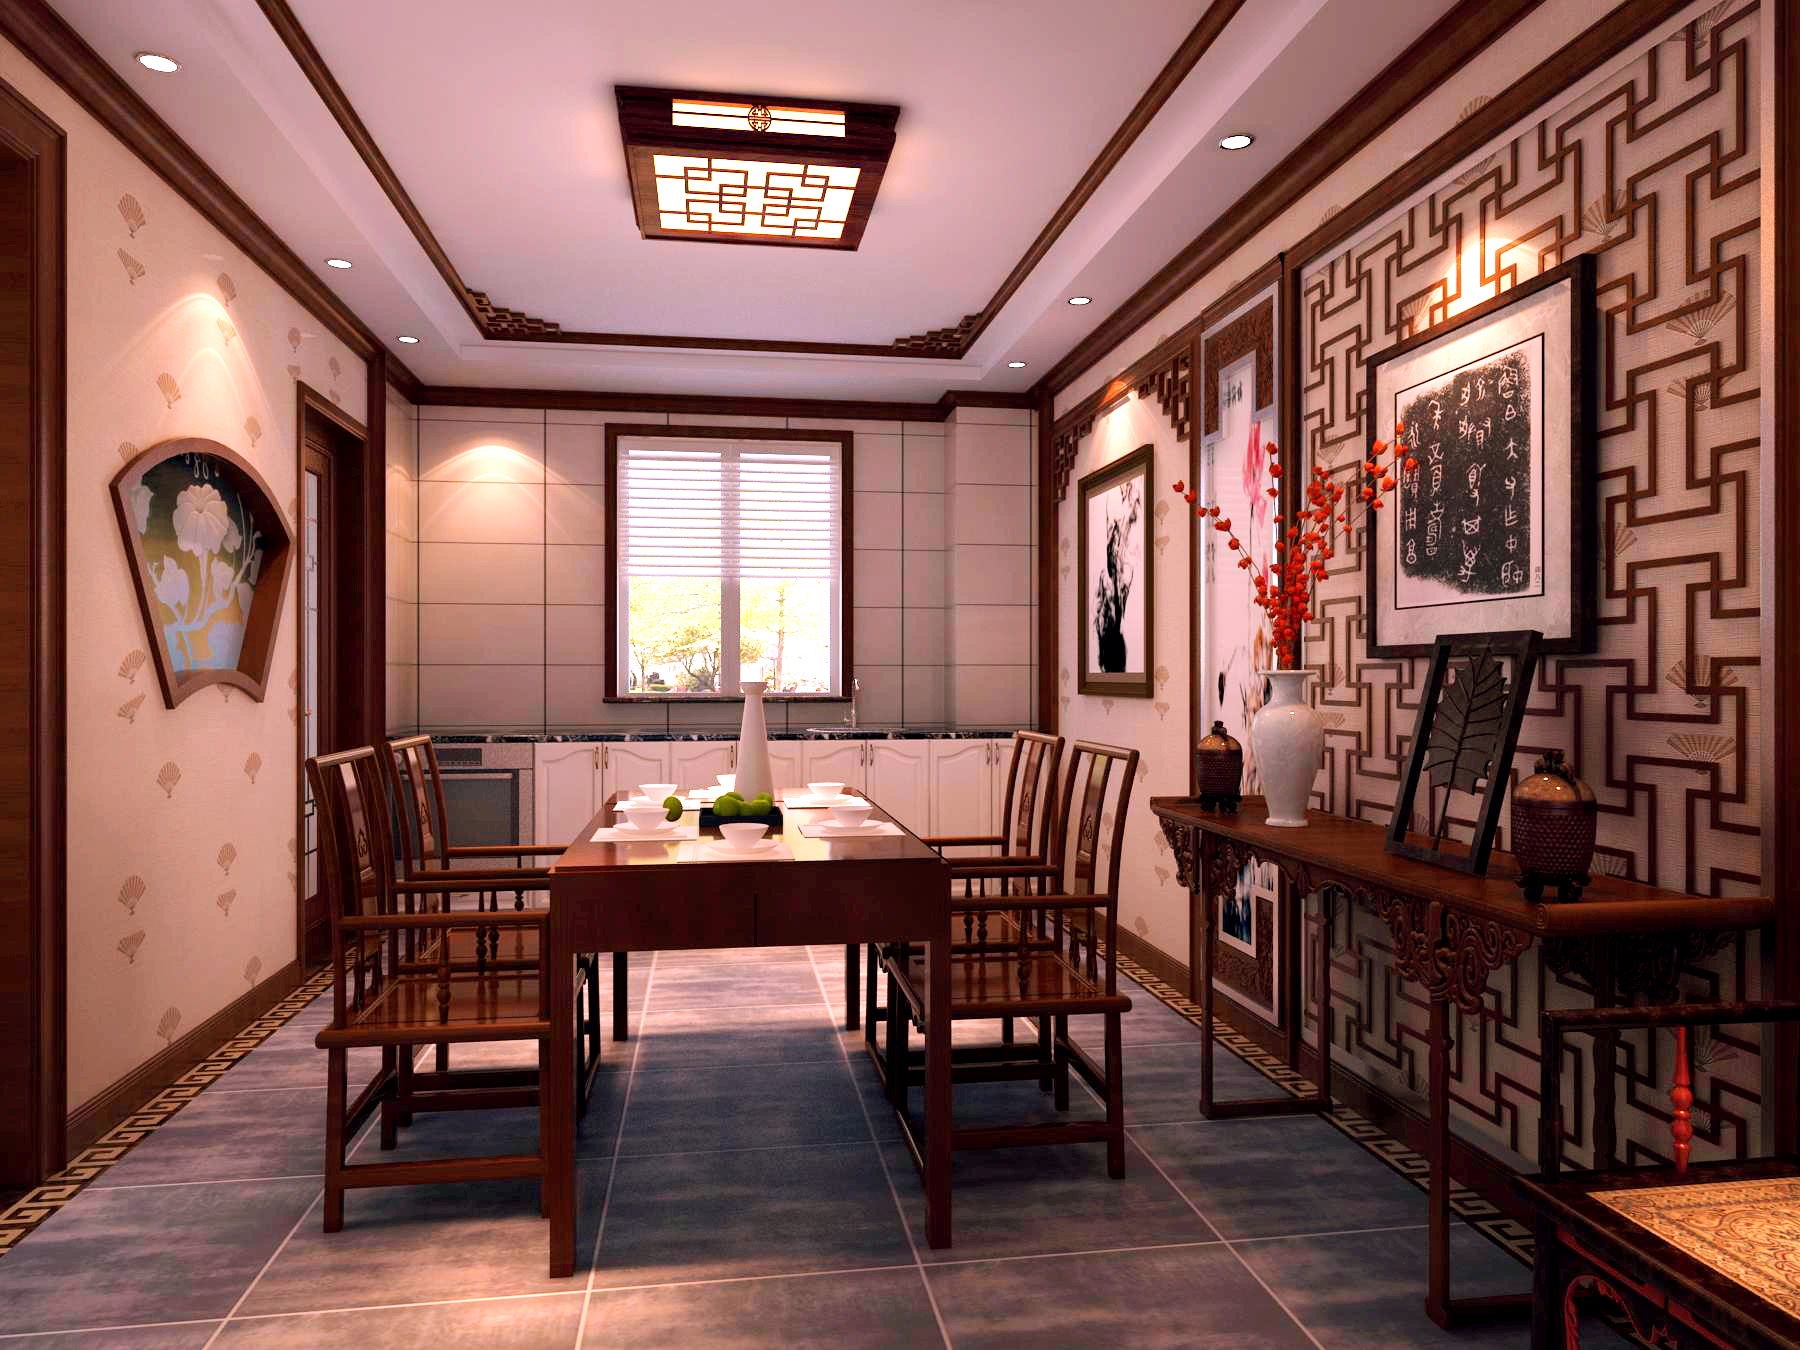 中式 四居 餐厅图片来自北京今朝装饰刘在V7西园中式文化生活的分享